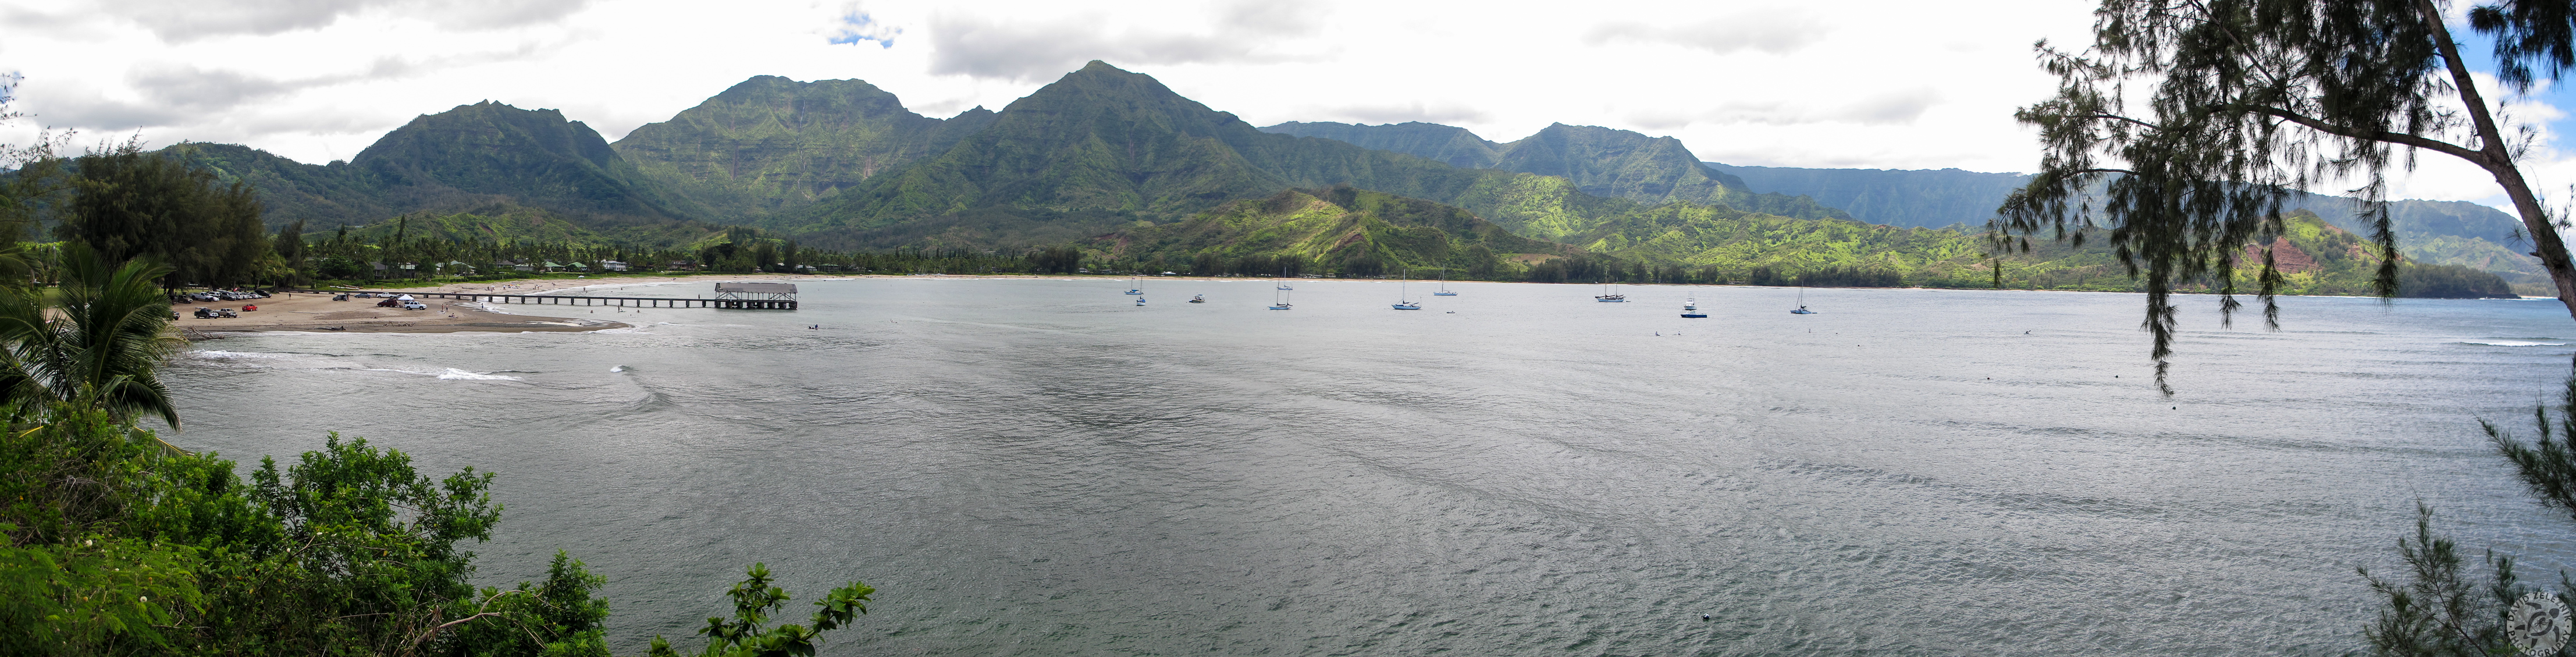 Kauai2012-060